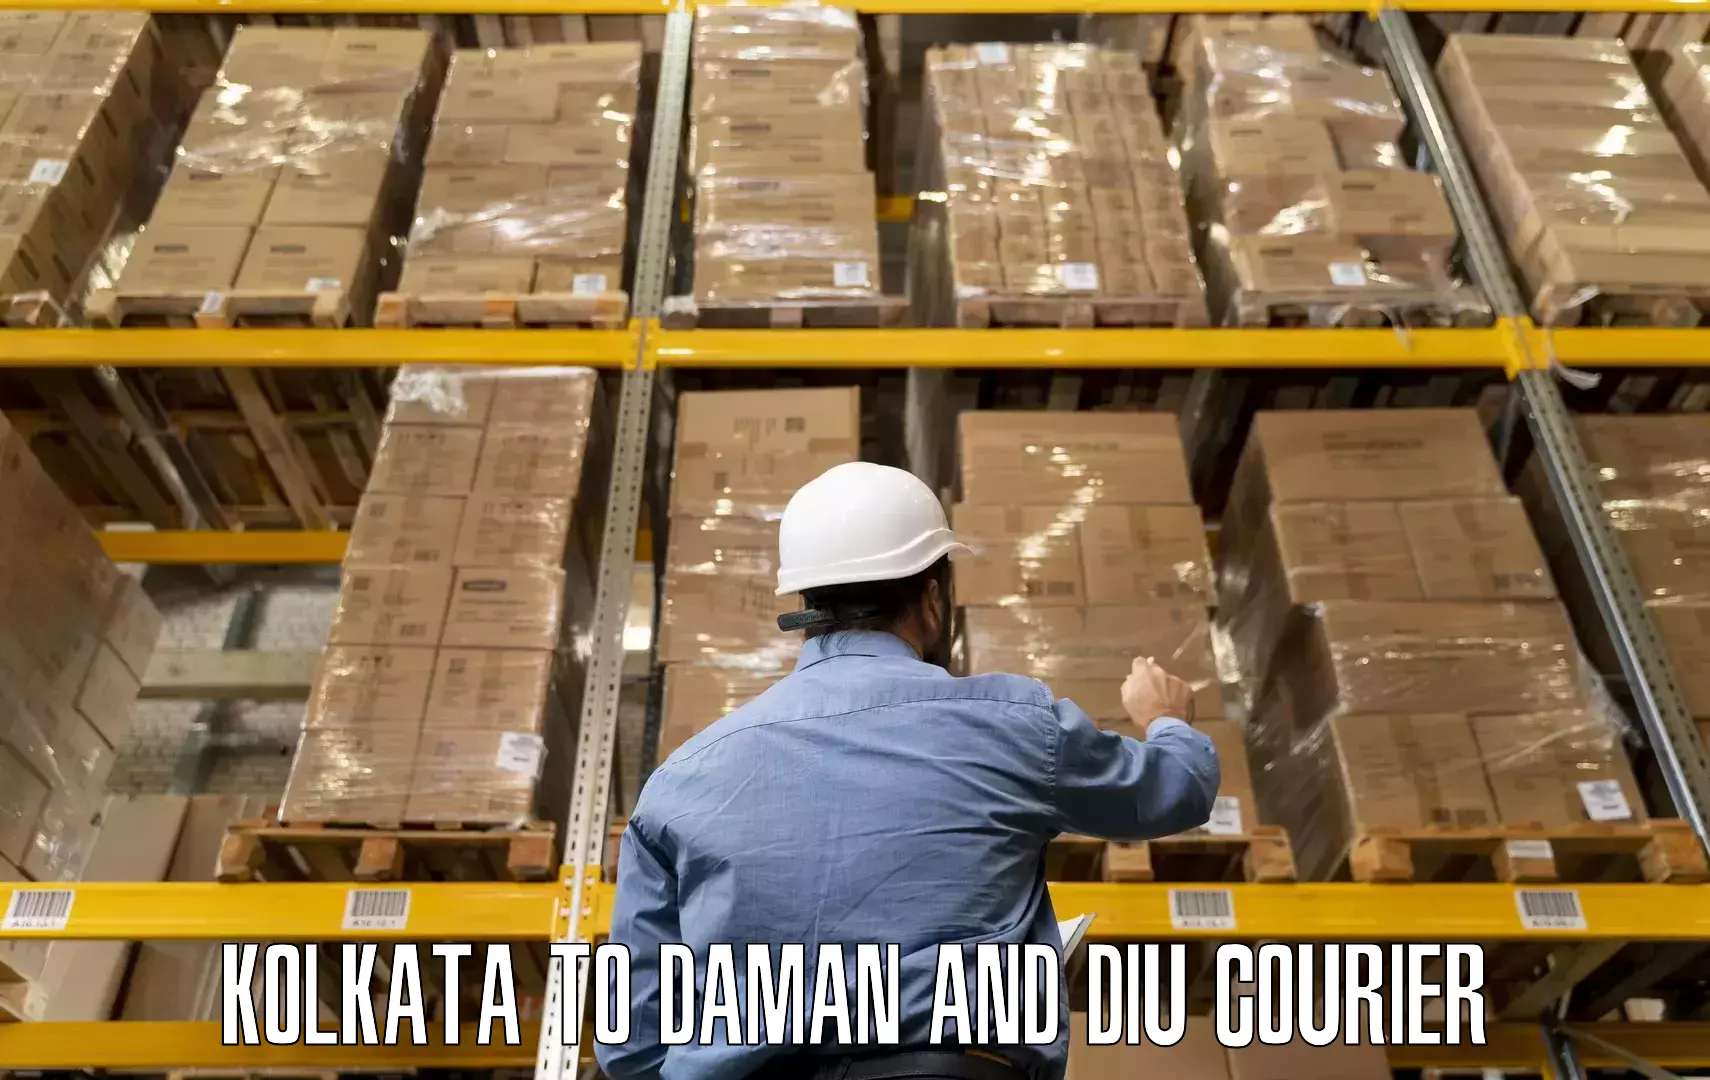 Moving and handling services Kolkata to Daman and Diu